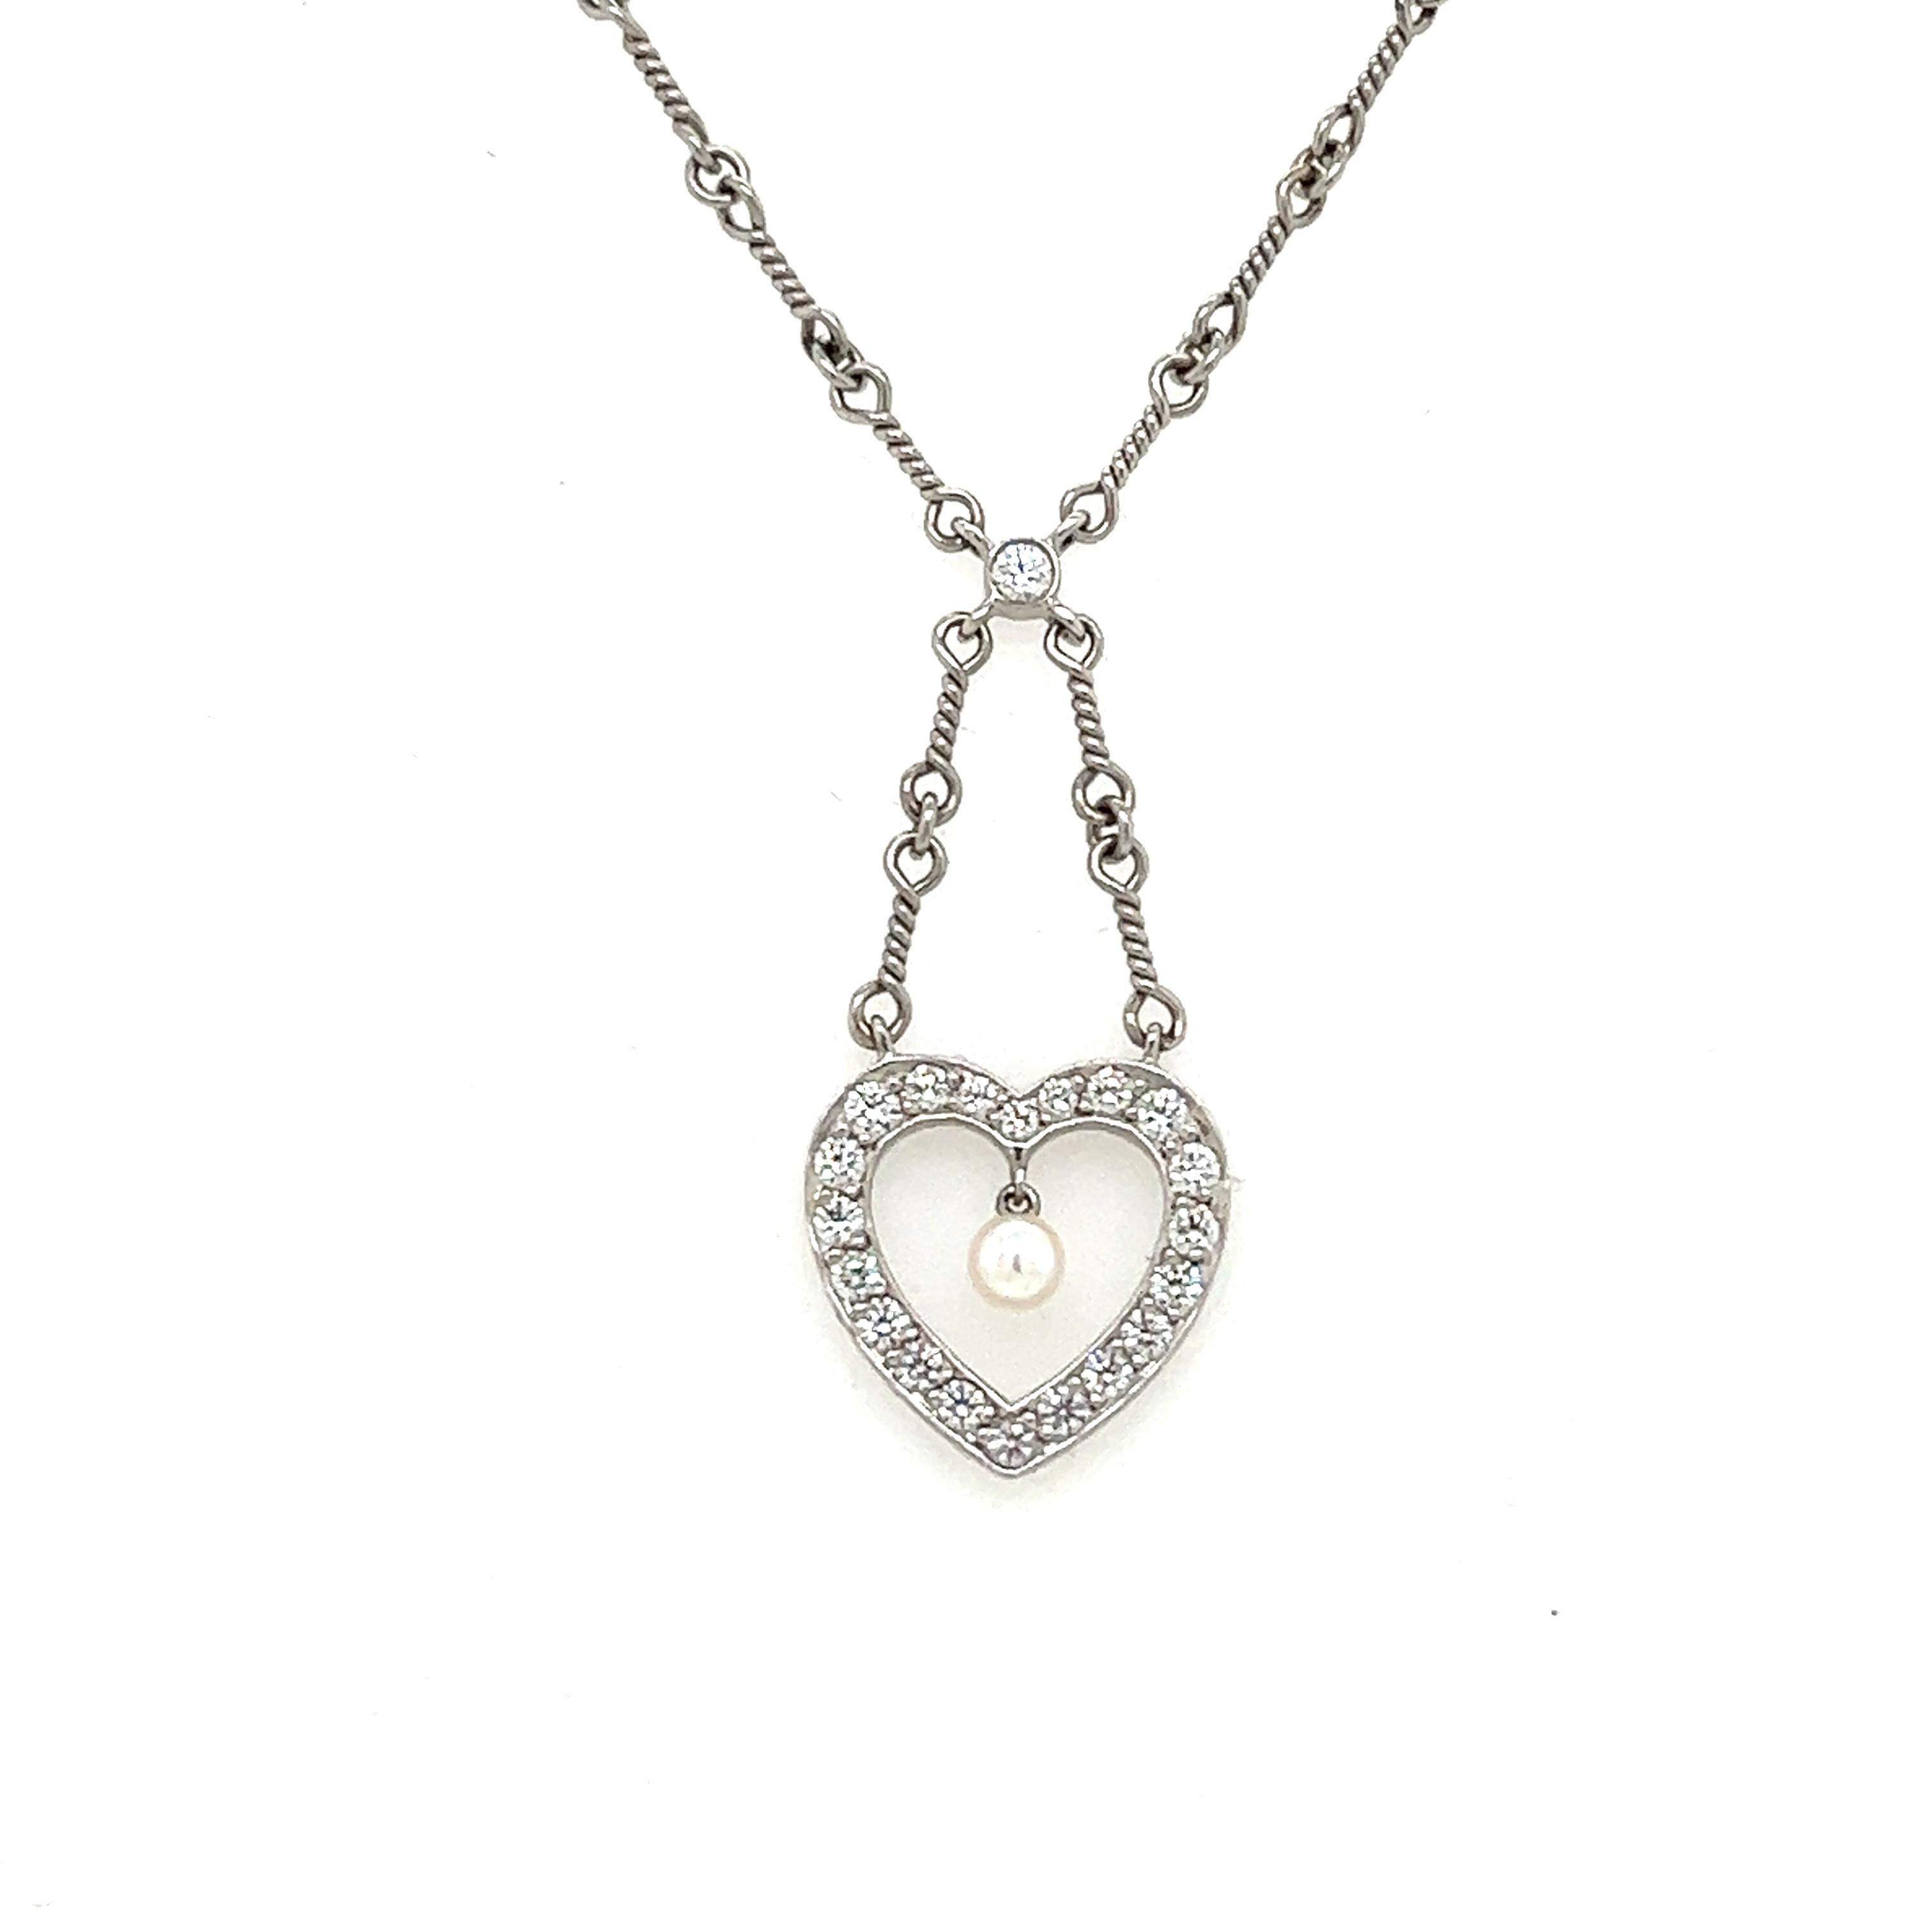   Collier magnifiquement réalisé par le célèbre designer Tiffany & Co. Le collier est réalisé en platine et présente un lien unique en fil métallique qui ne manquera pas d'attirer l'attention. 
  Le collier est rehaussé d'un diamant serti en chaton